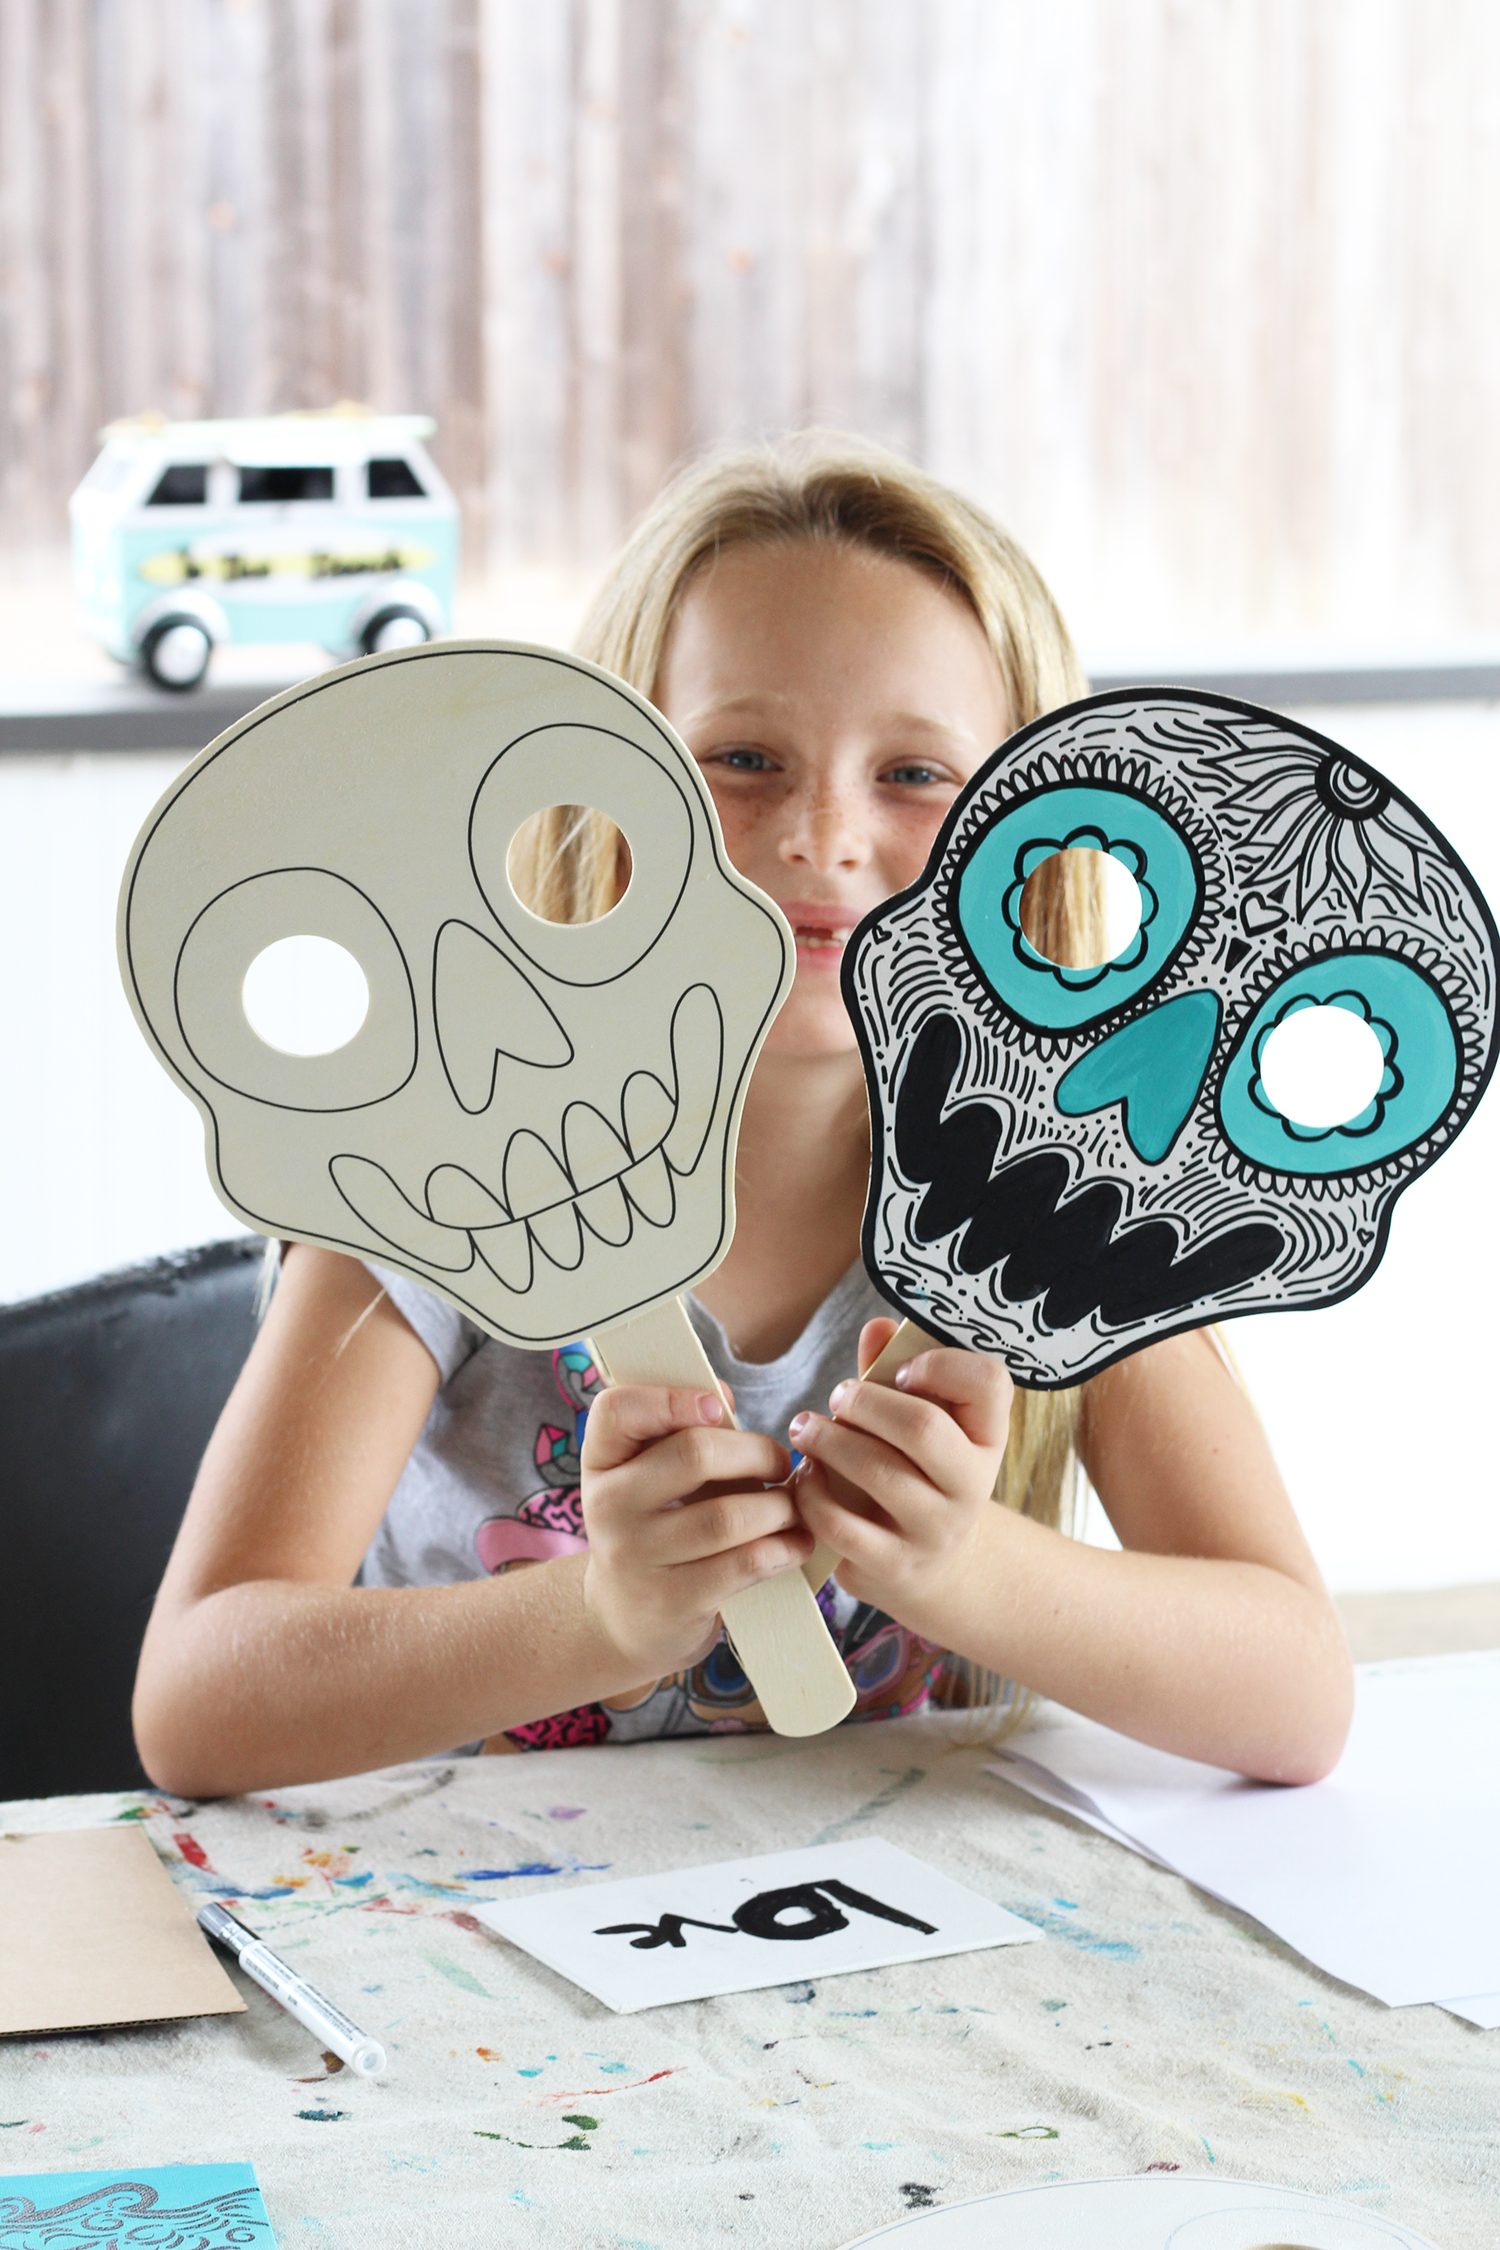 How to paint DIA DE LOS MUERTOS mask - easy Halloween tutorial 